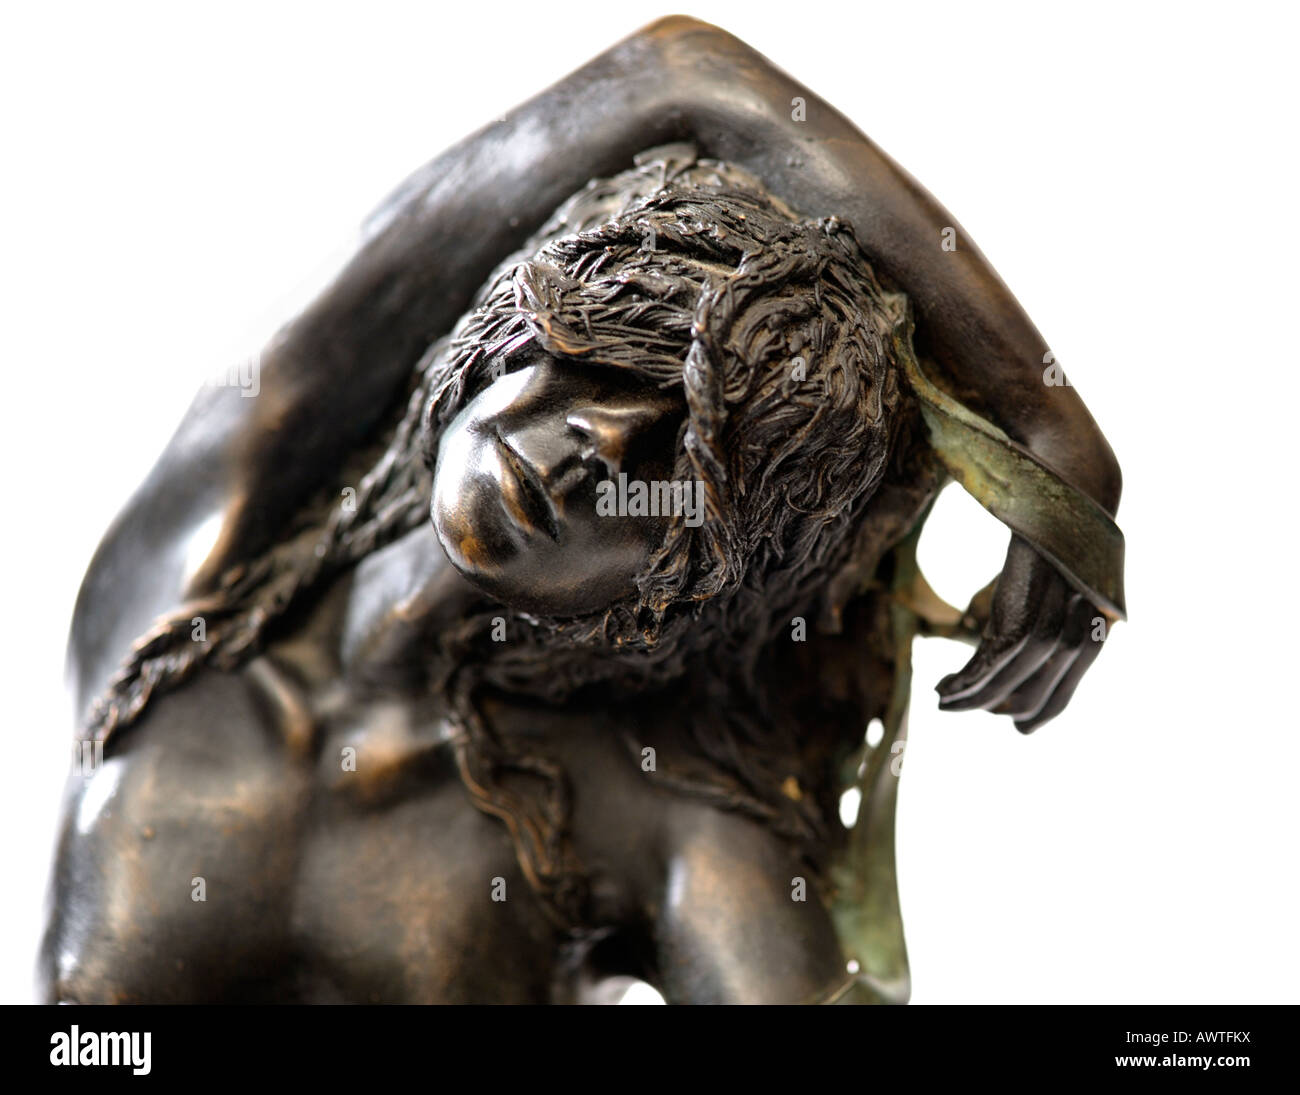 Escultura de bronce Estatuilla resina cintas por Sue Riley escultor Edición Limitada de 25 1990s detalle sólo para uso editorial Foto de stock